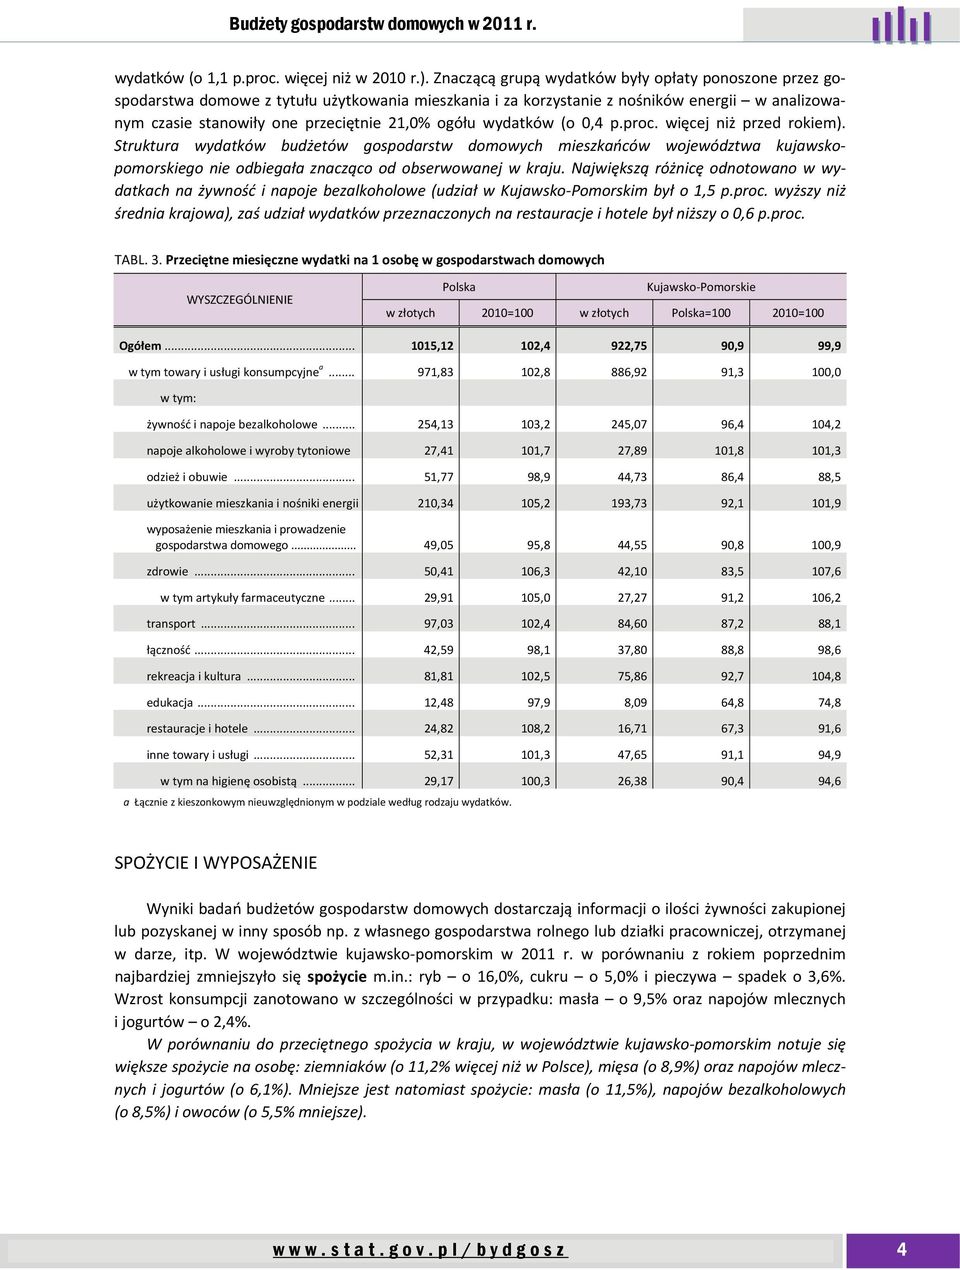 wydatków (o 0,4 p.proc. więcej niż przed rokiem). Struktura wydatków budżetów gospodarstw domowych mieszkańców województwa kujawskopomorskiego nie odbiegała znacząco od obserwowanej w kraju.